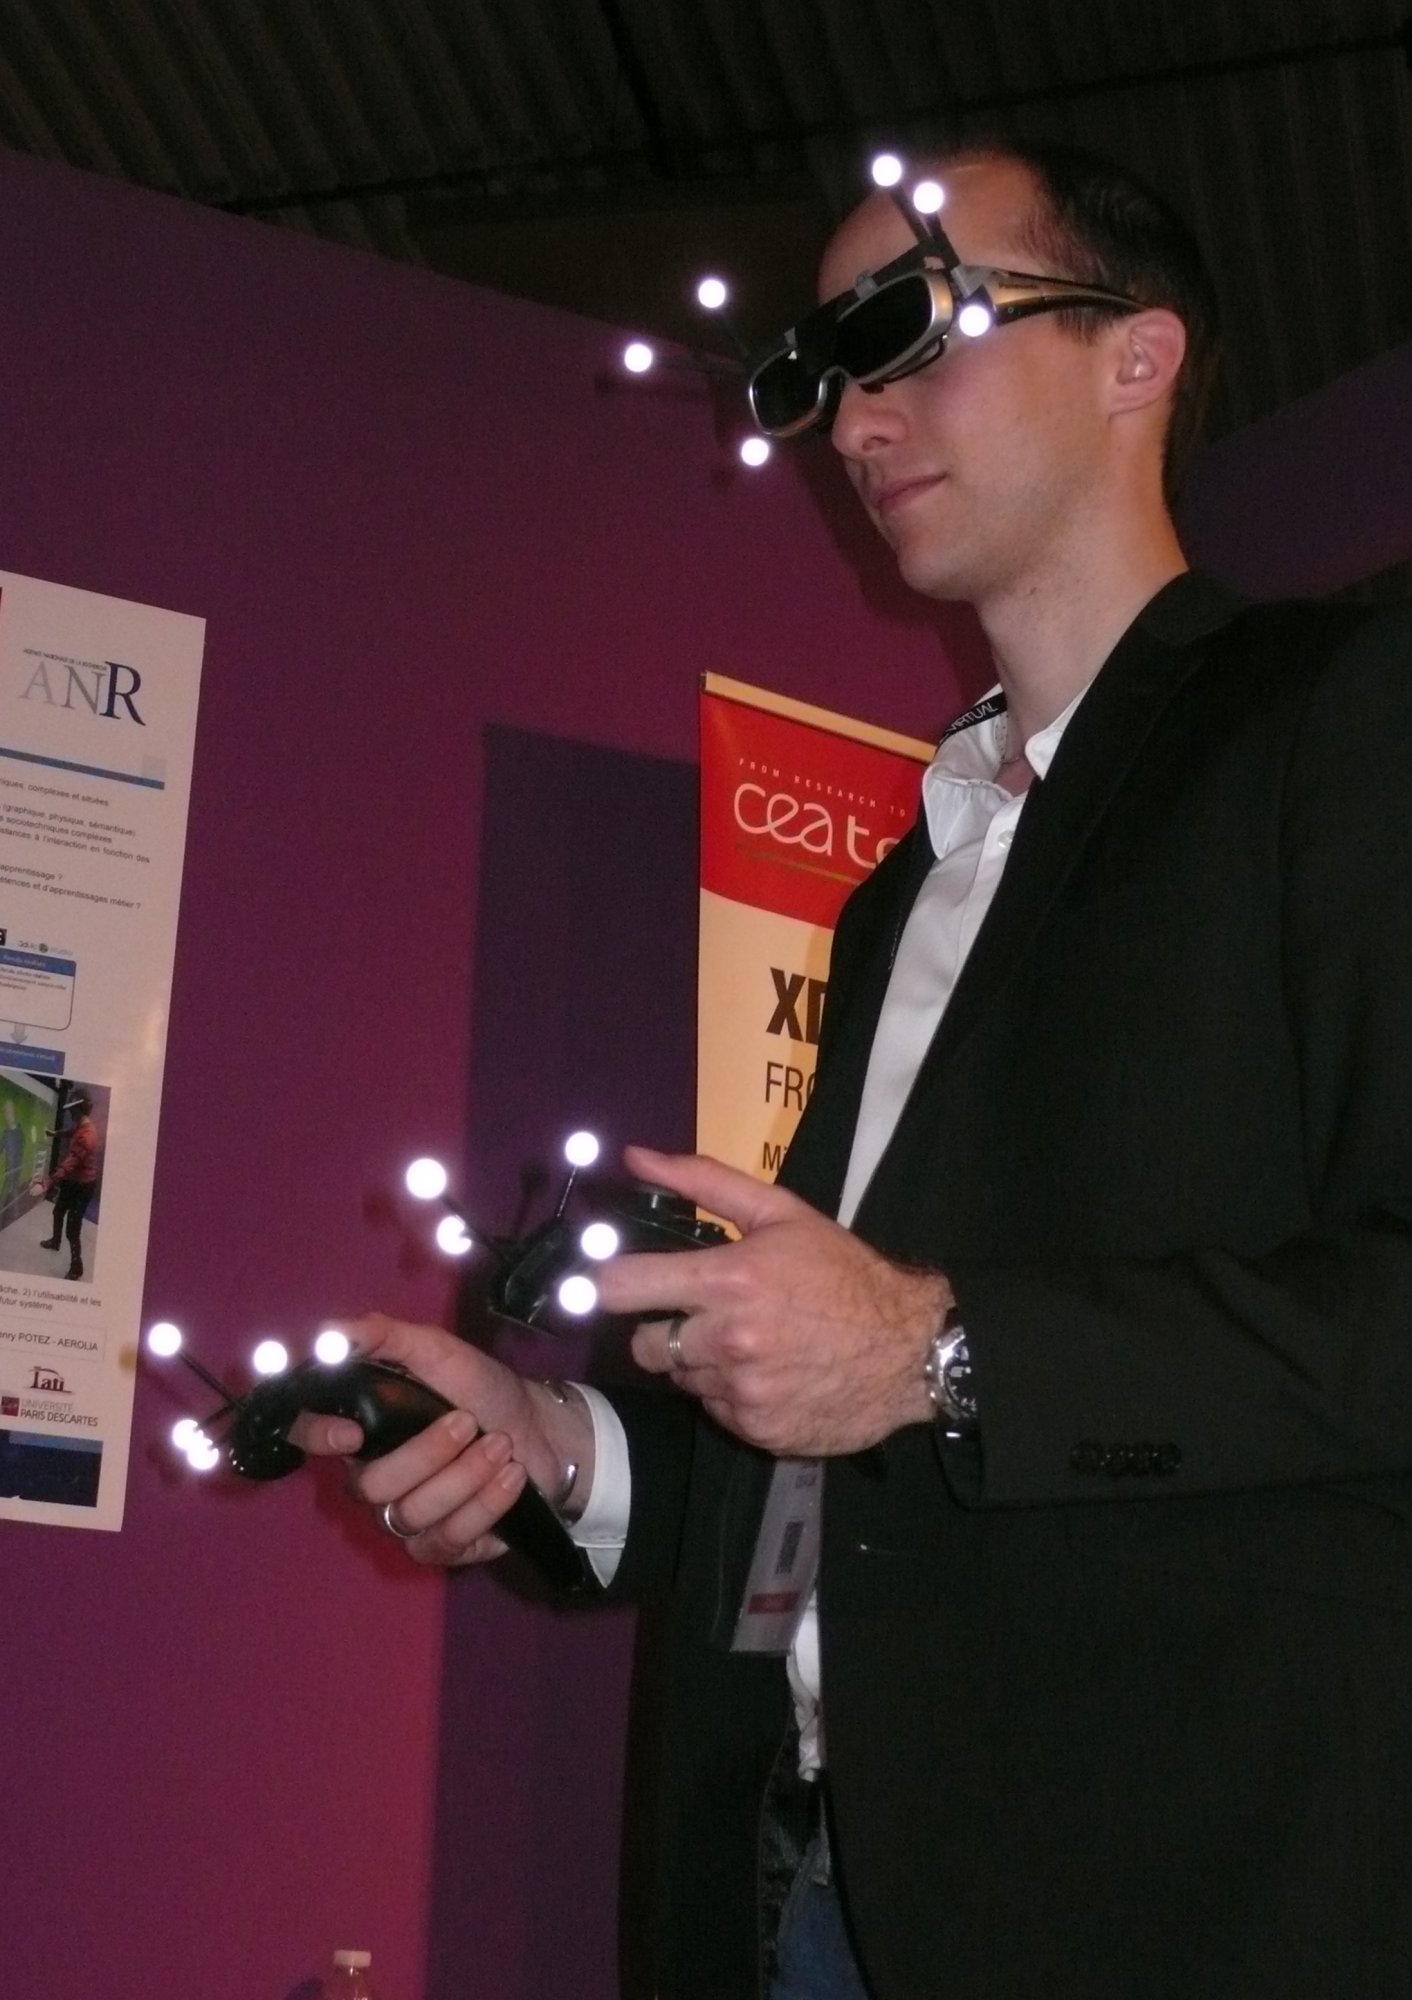 Le harnachement de la réalité virtuelle